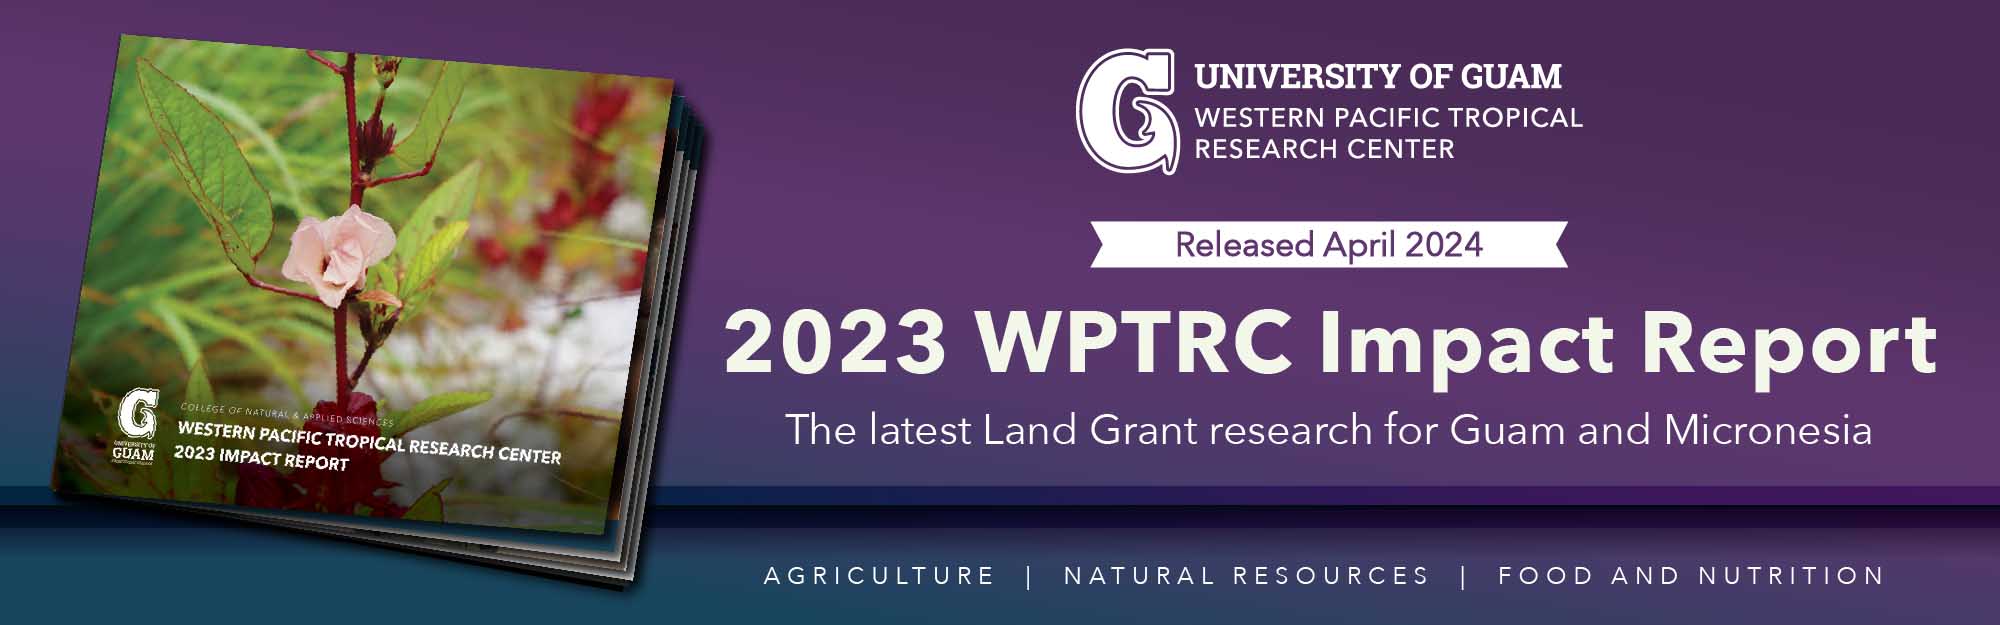 2023 WPTRC Impact Report